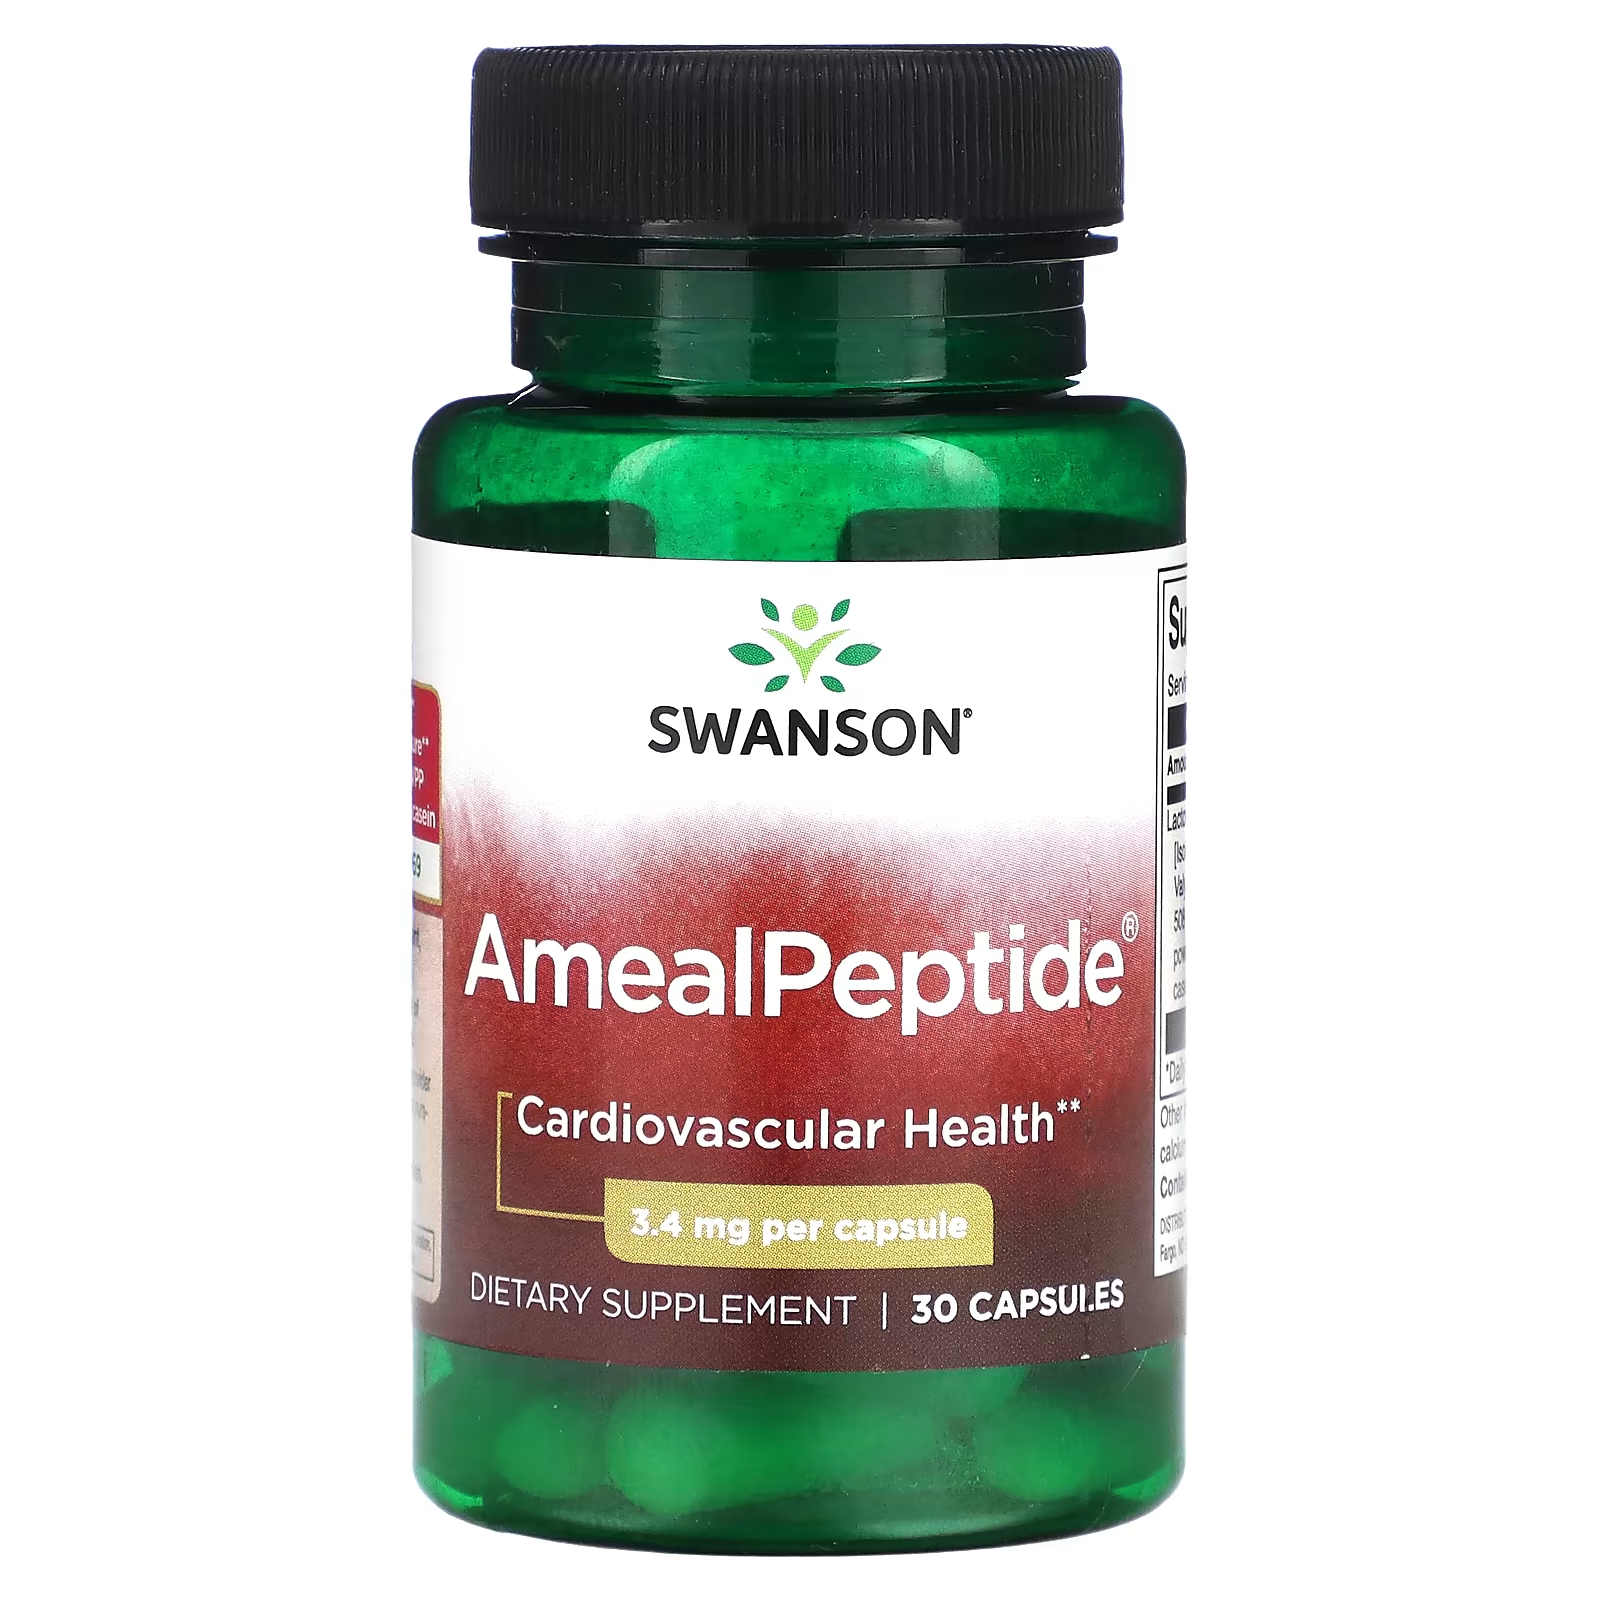 Пищевая добавка Swanson AmealPeptide 34 мг, 30 капсул пищевая добавка swanson зеленый чай 500 мг 30 капсул